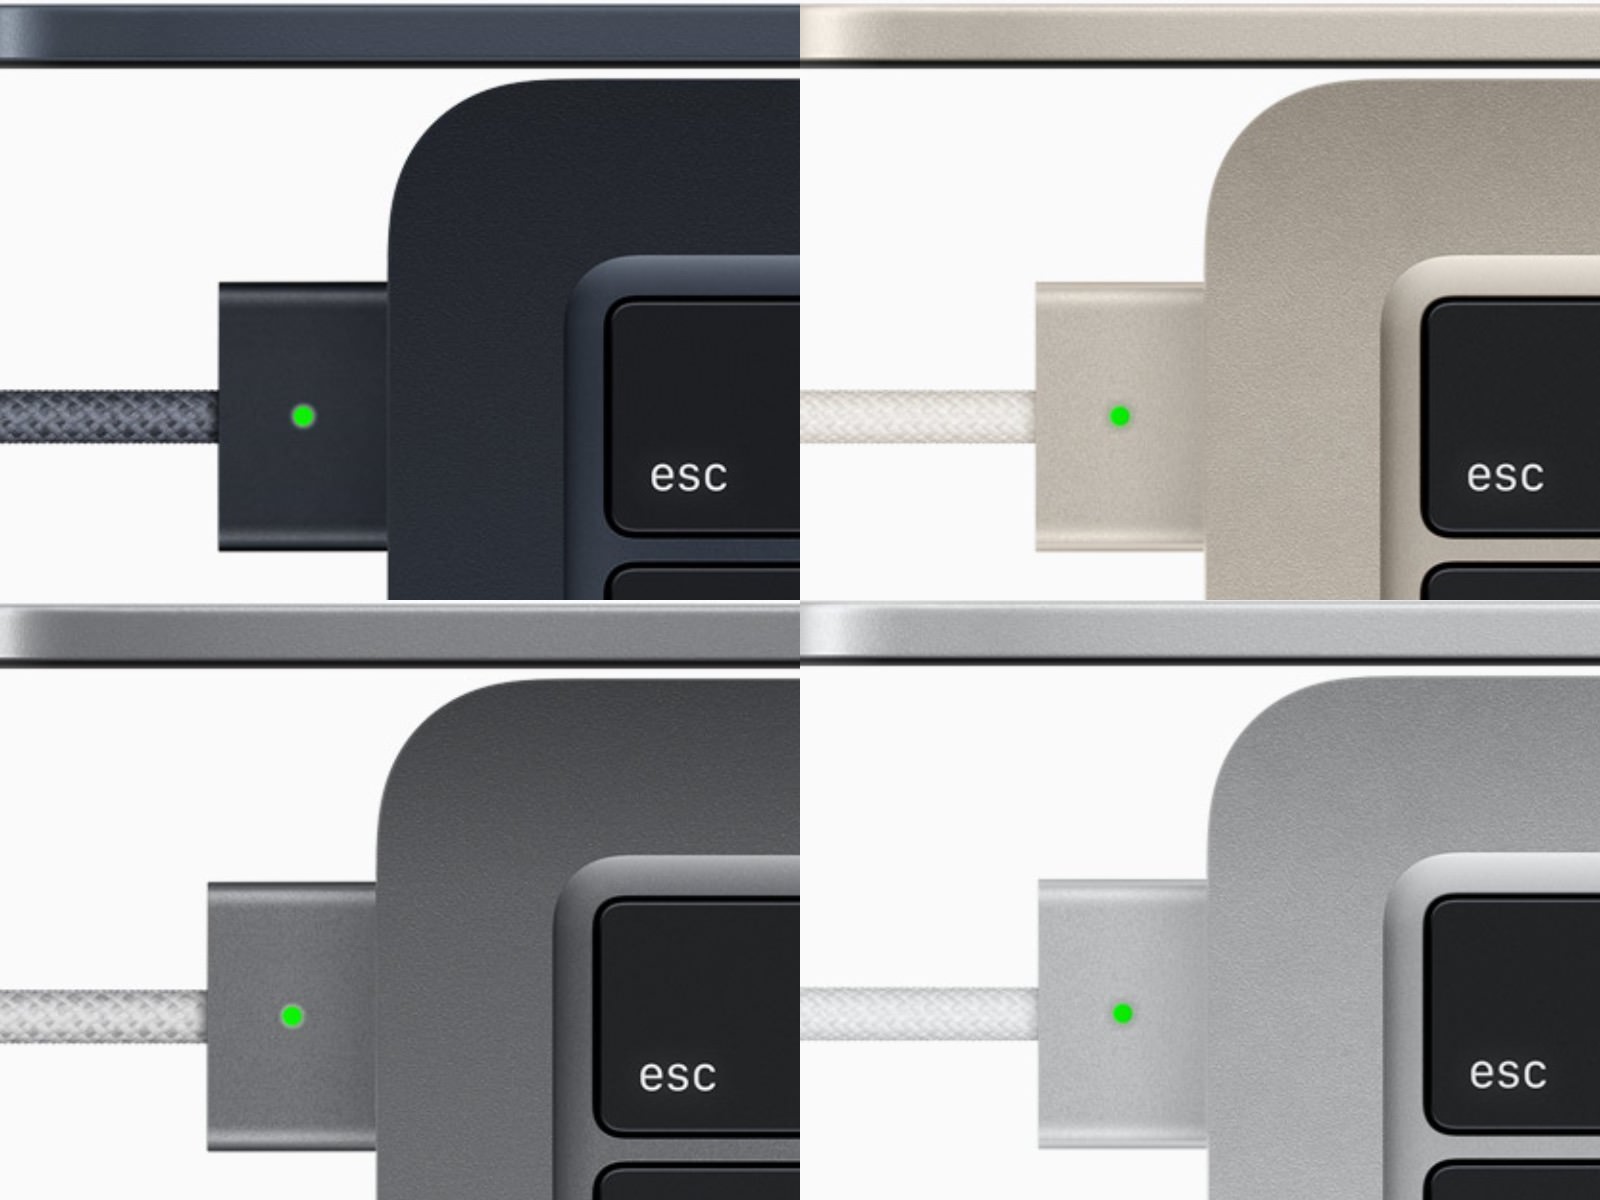 M2 MacBook Airのカラーに合わせたMagSafeケーブル、USB-C端子の違和感